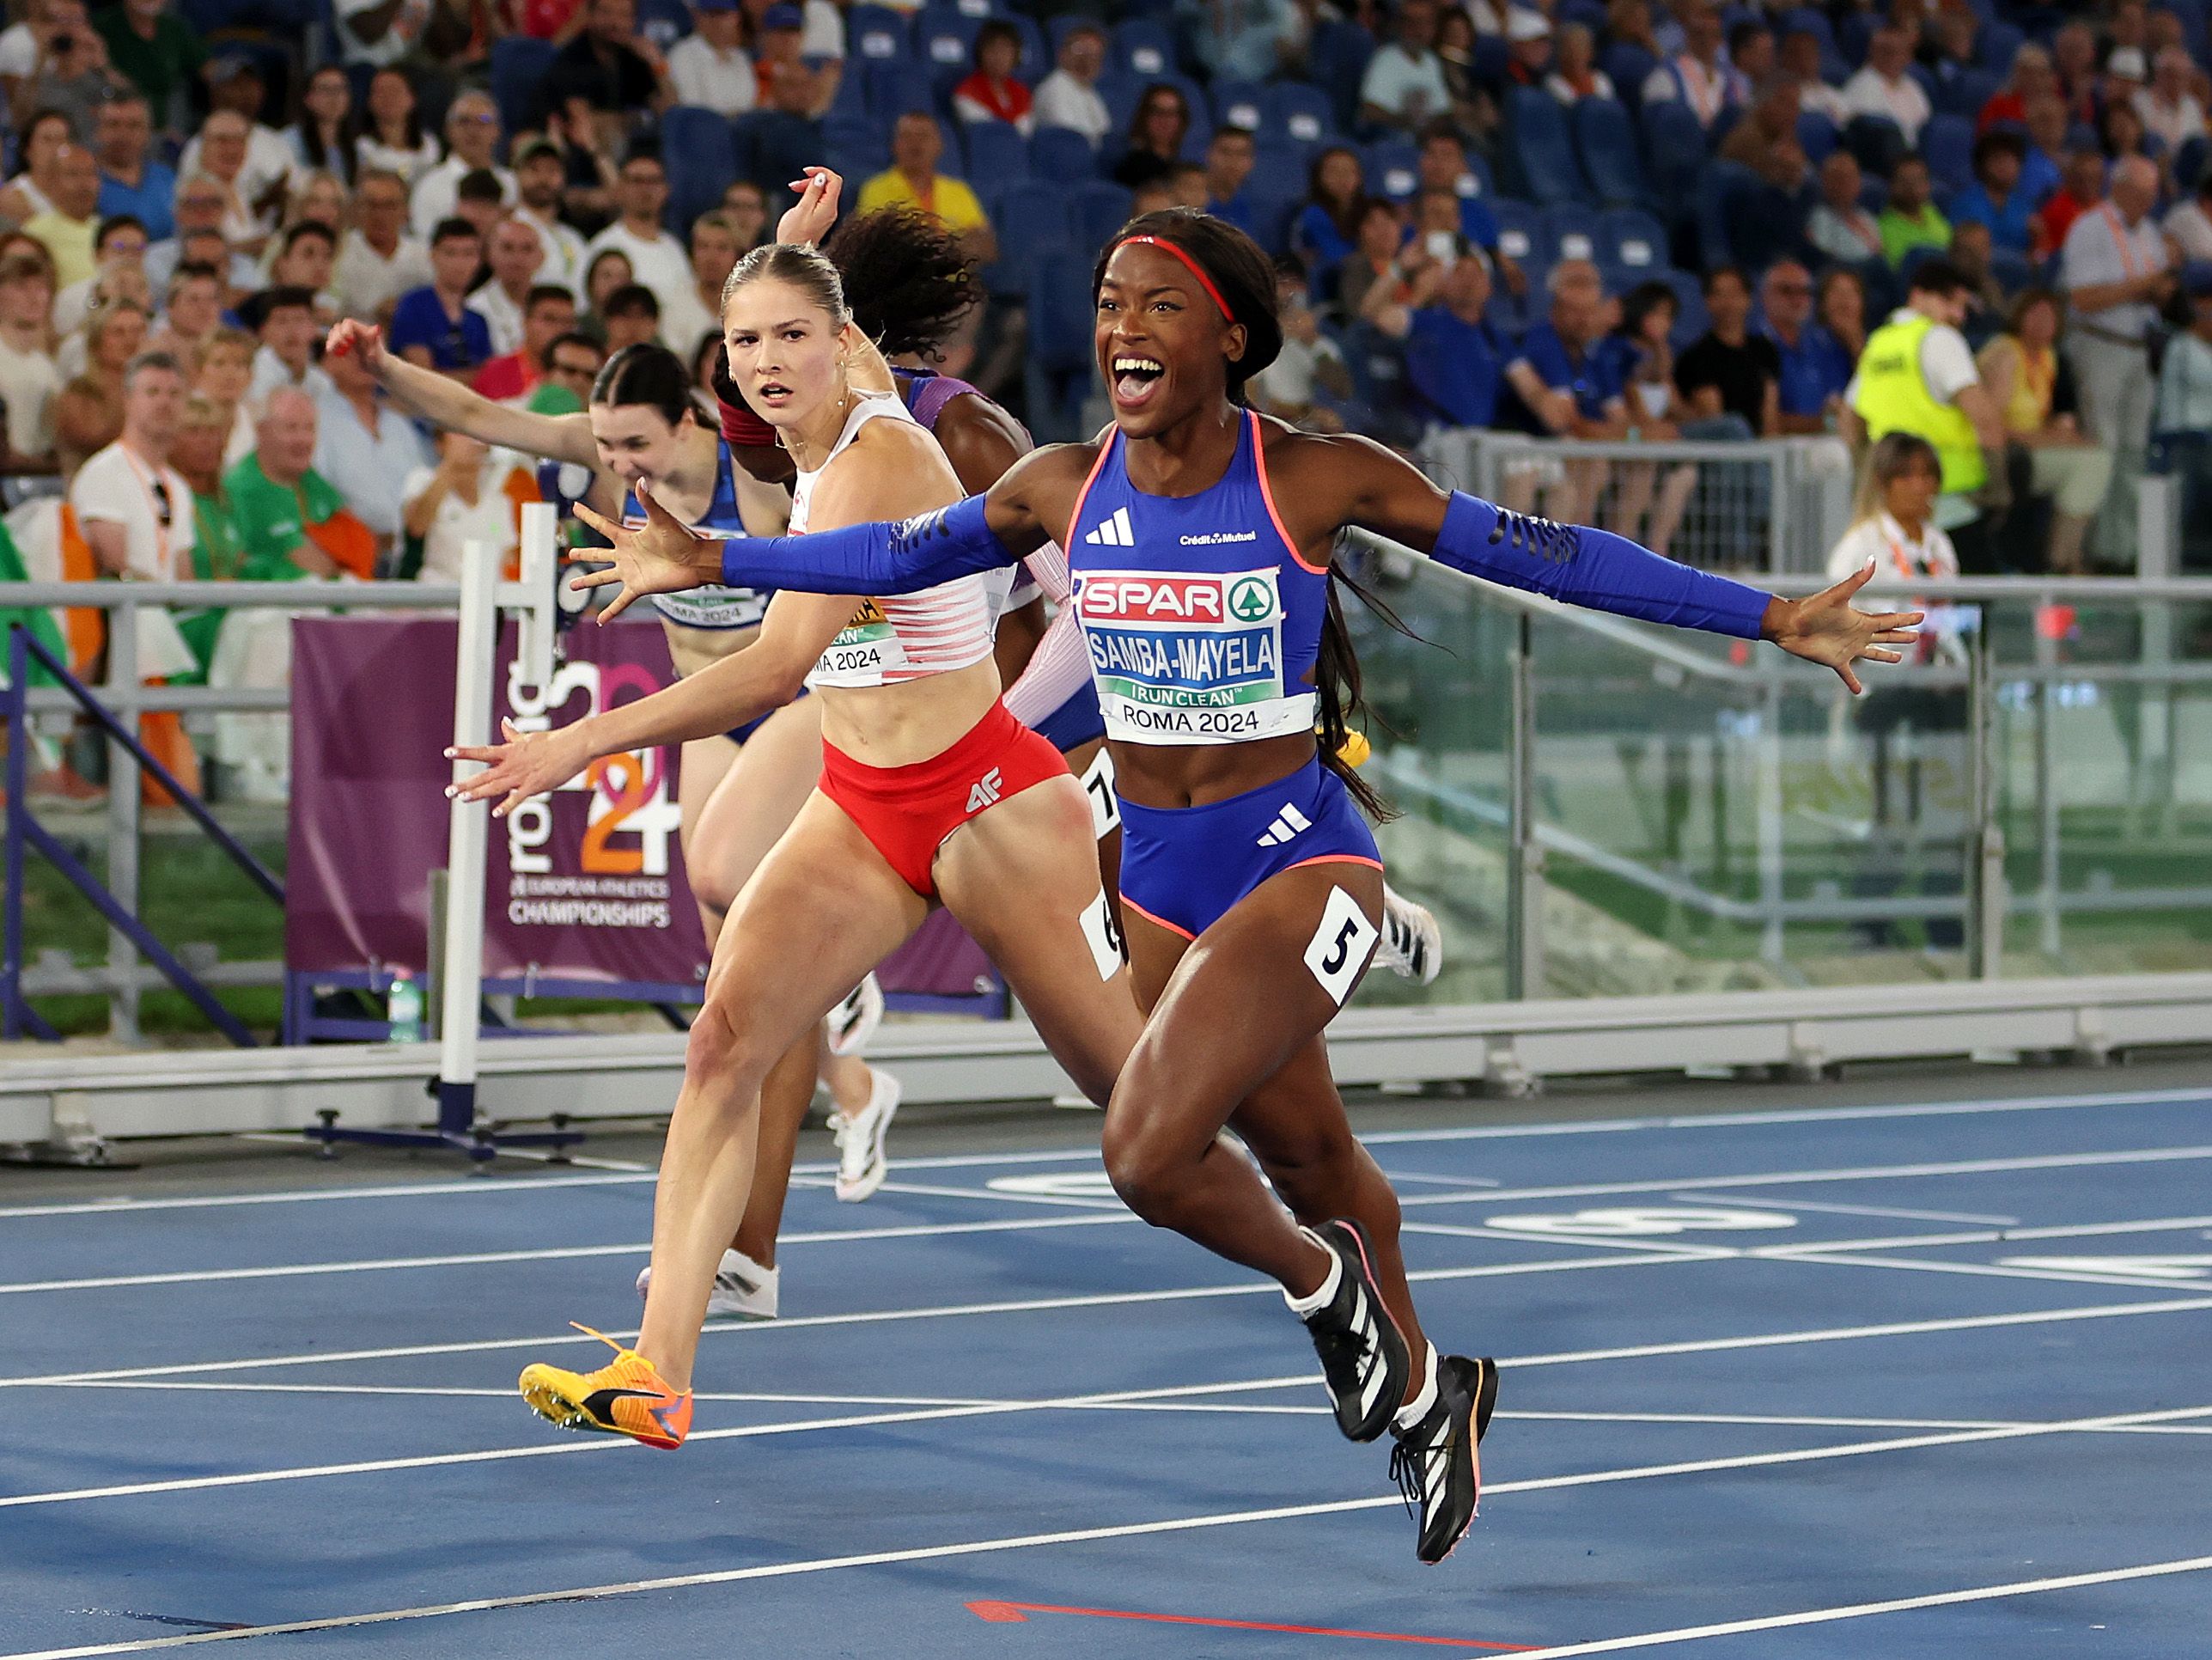 Cyrena Samba-Mayela wins the 100m hurdles at the European Championships